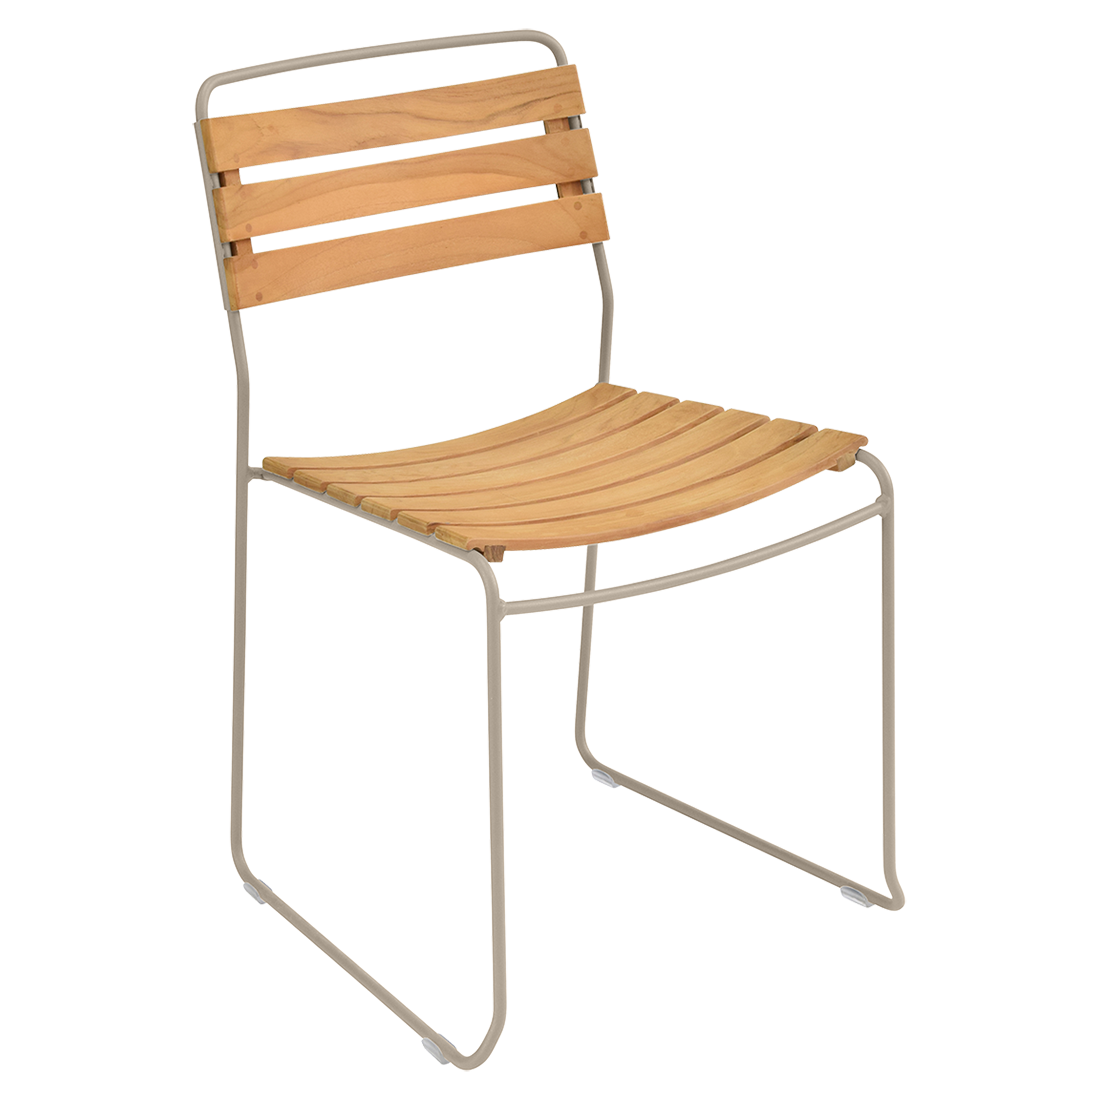 chaise surprising, chaise fermob, chaise bois et metal, chaise de jardin, chaise design, chaise bois et beige, guggenbichler